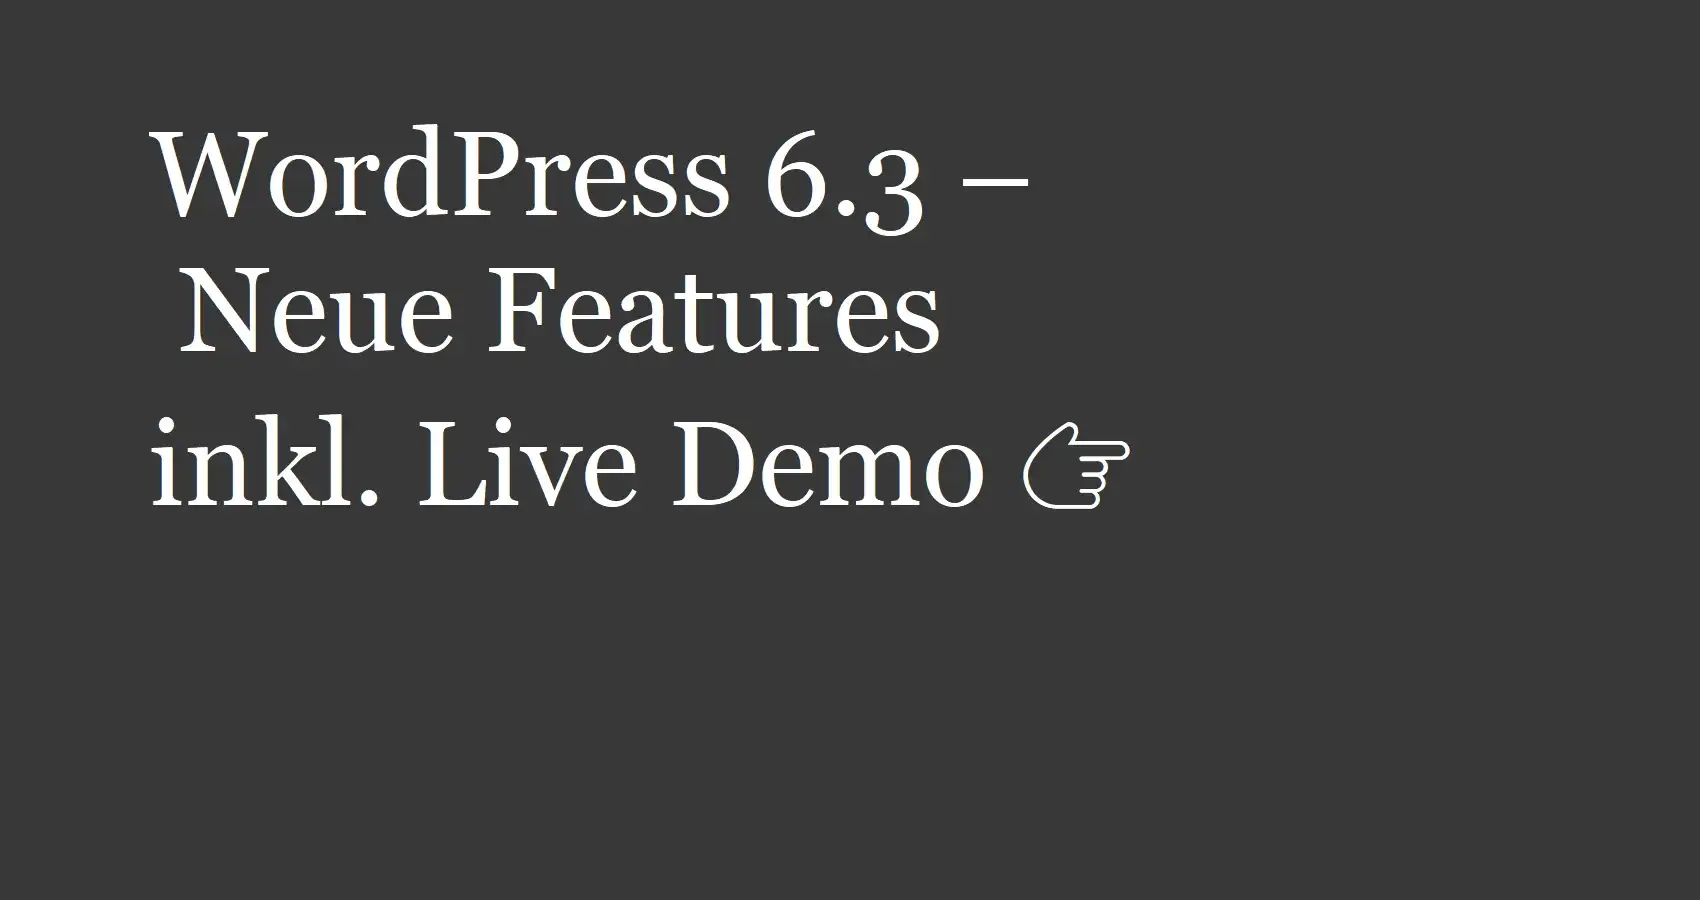 WordPress 6.3 – Neue Features inkl. Live Demo 👉